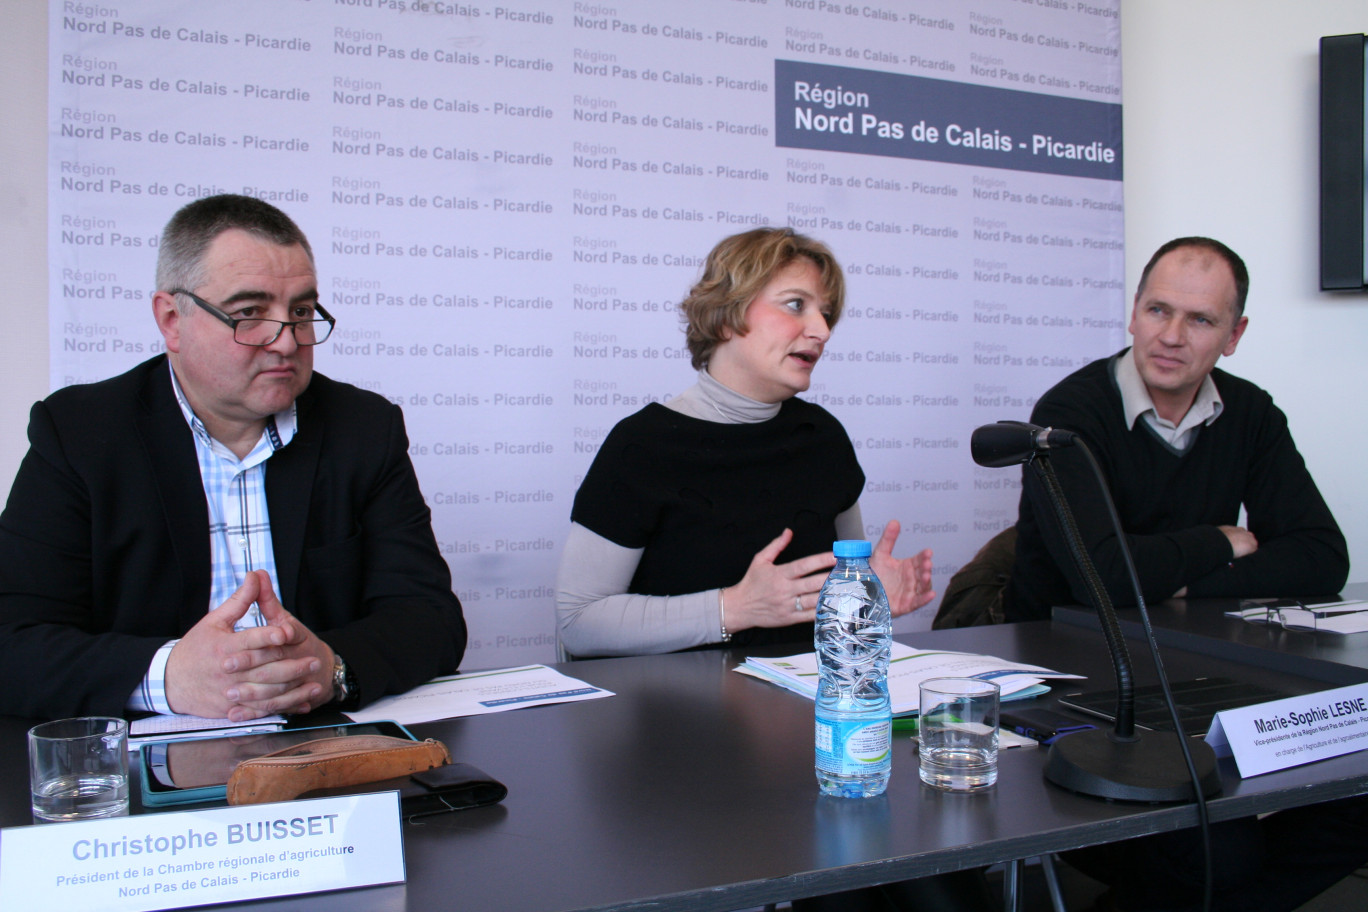 « De gauche à droite, Christophe Buisset, Marie-Sophie Lesne et Ludovic Cauchois ».